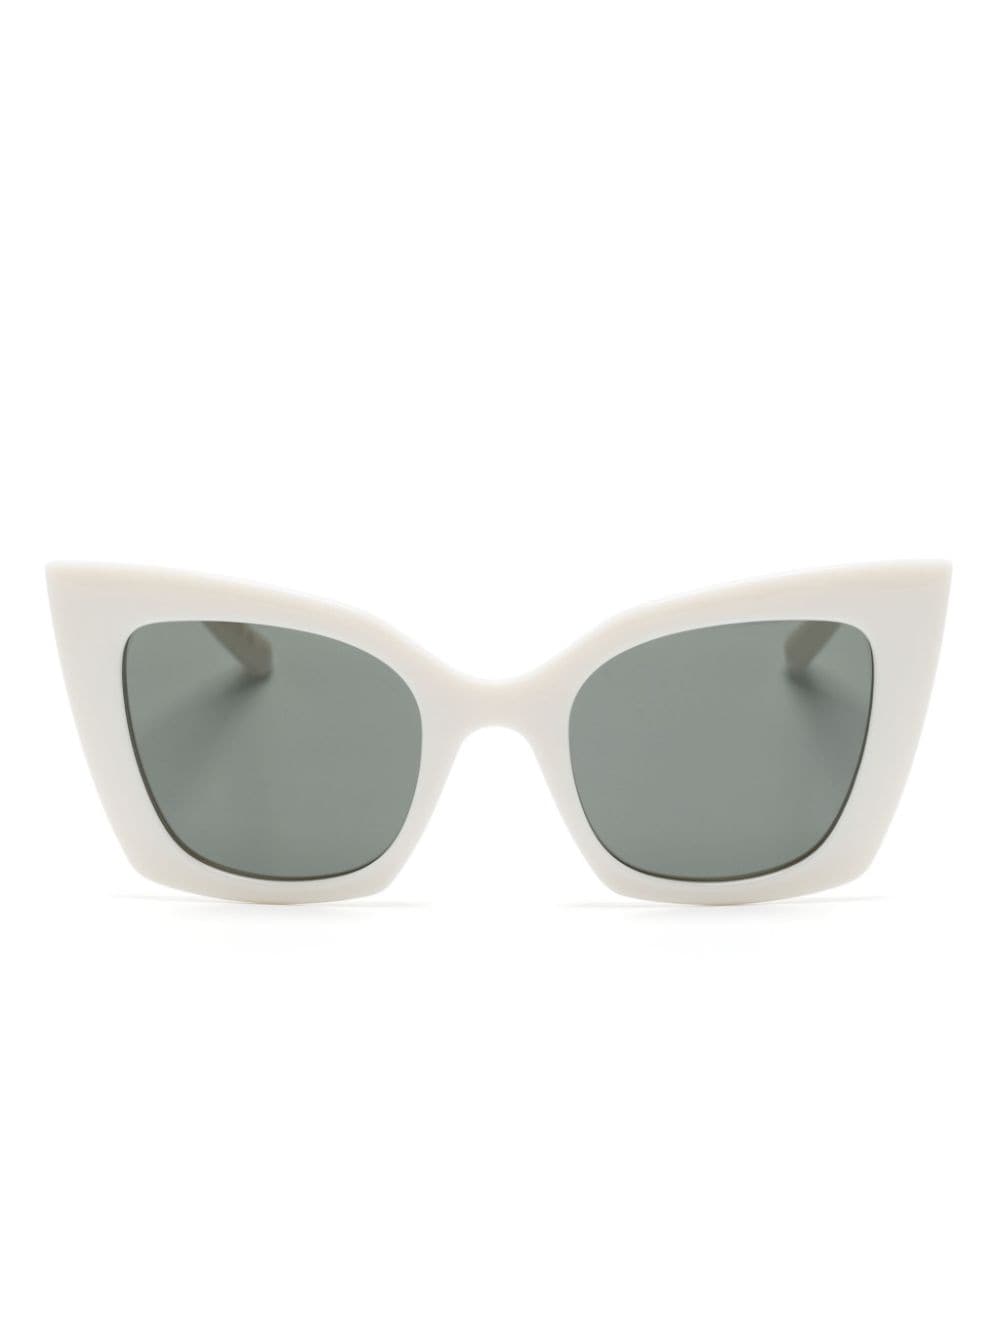 Saint Laurent 552 Cat-eye Sunglasses In White